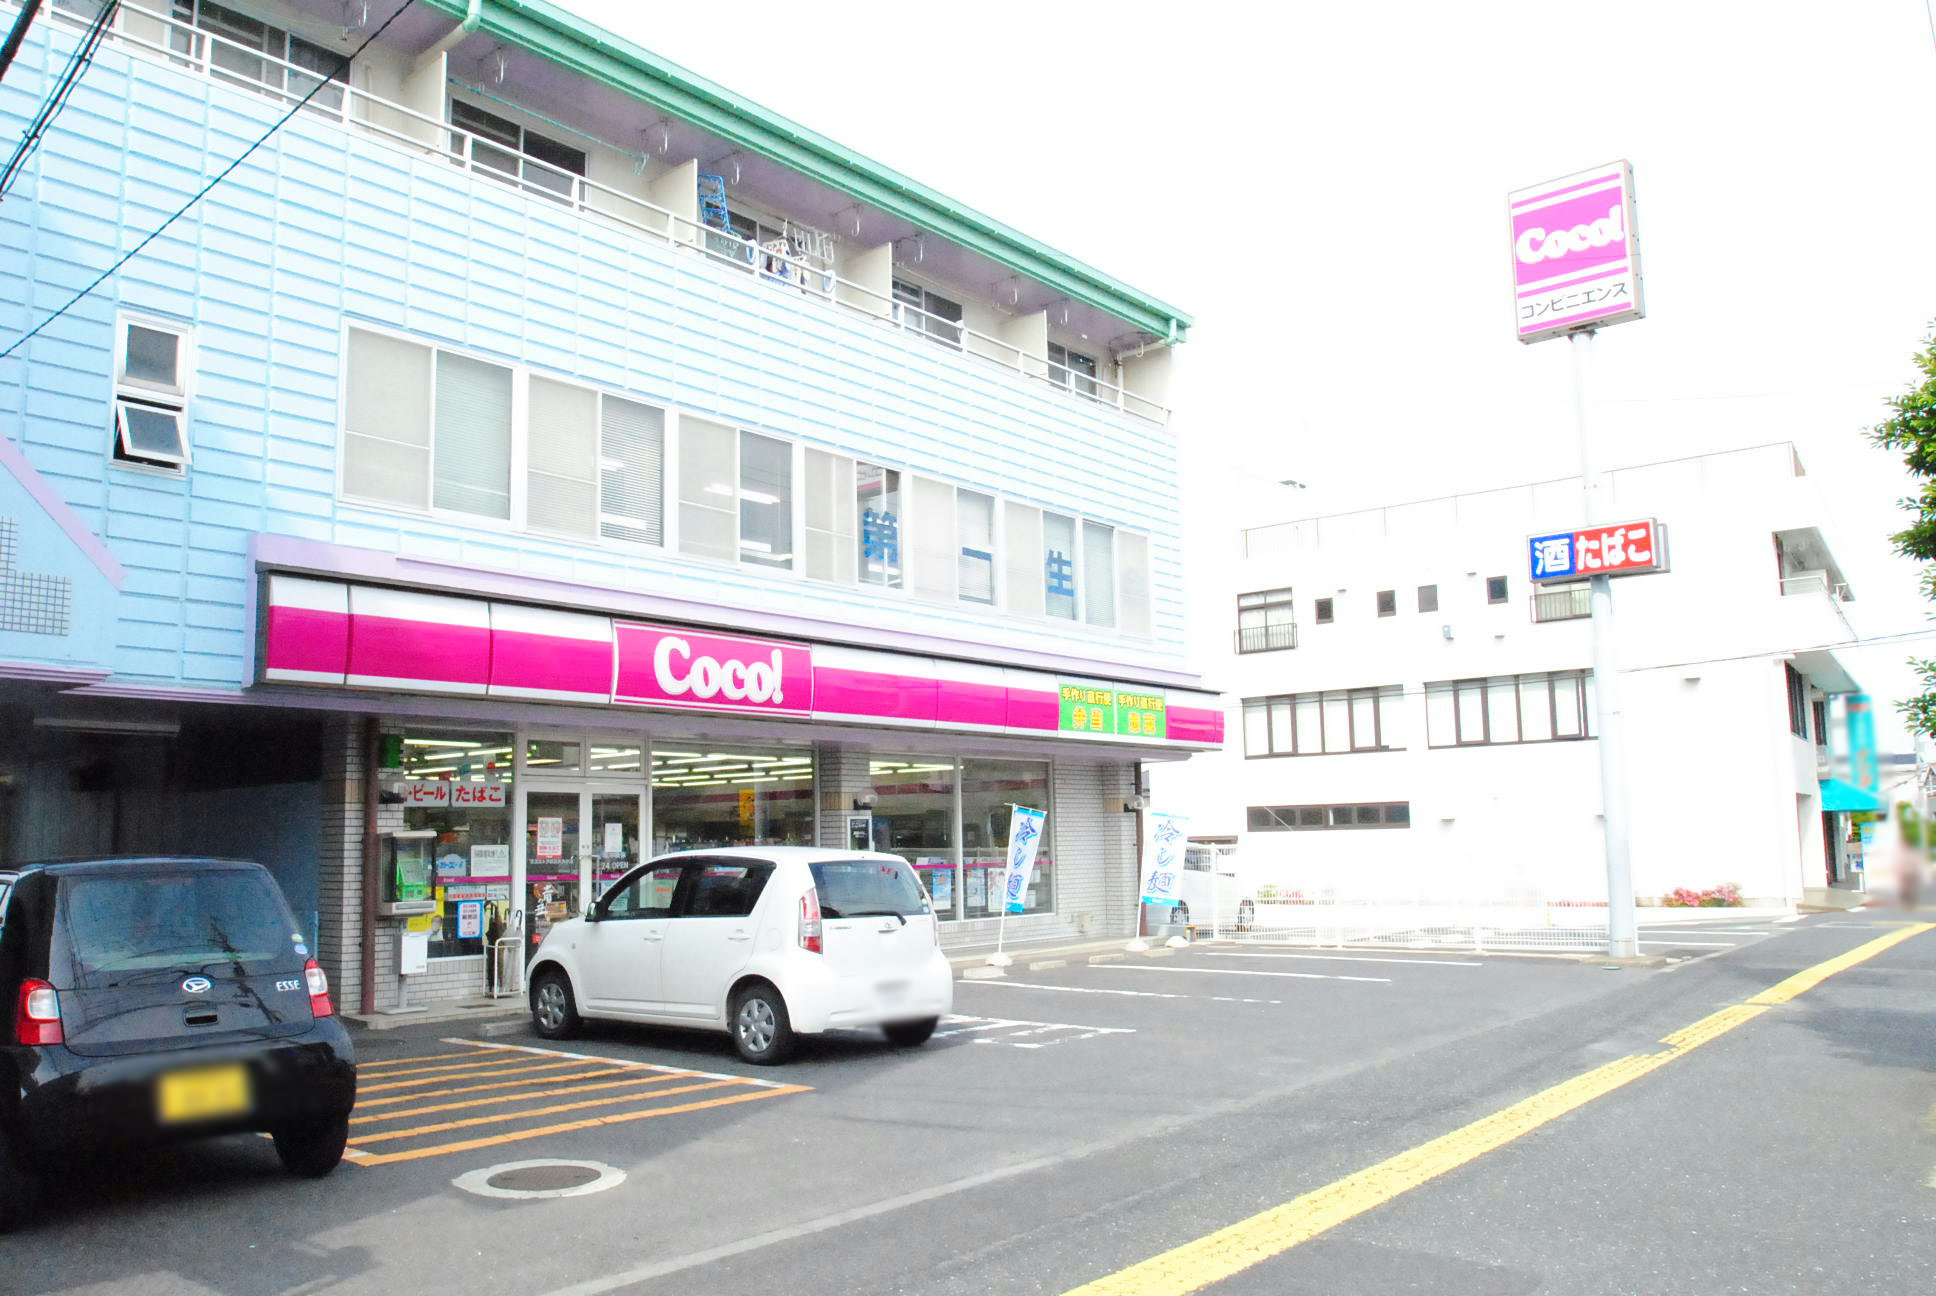 Convenience store. 370m to the Coco store Hitachi Omika store (convenience store)